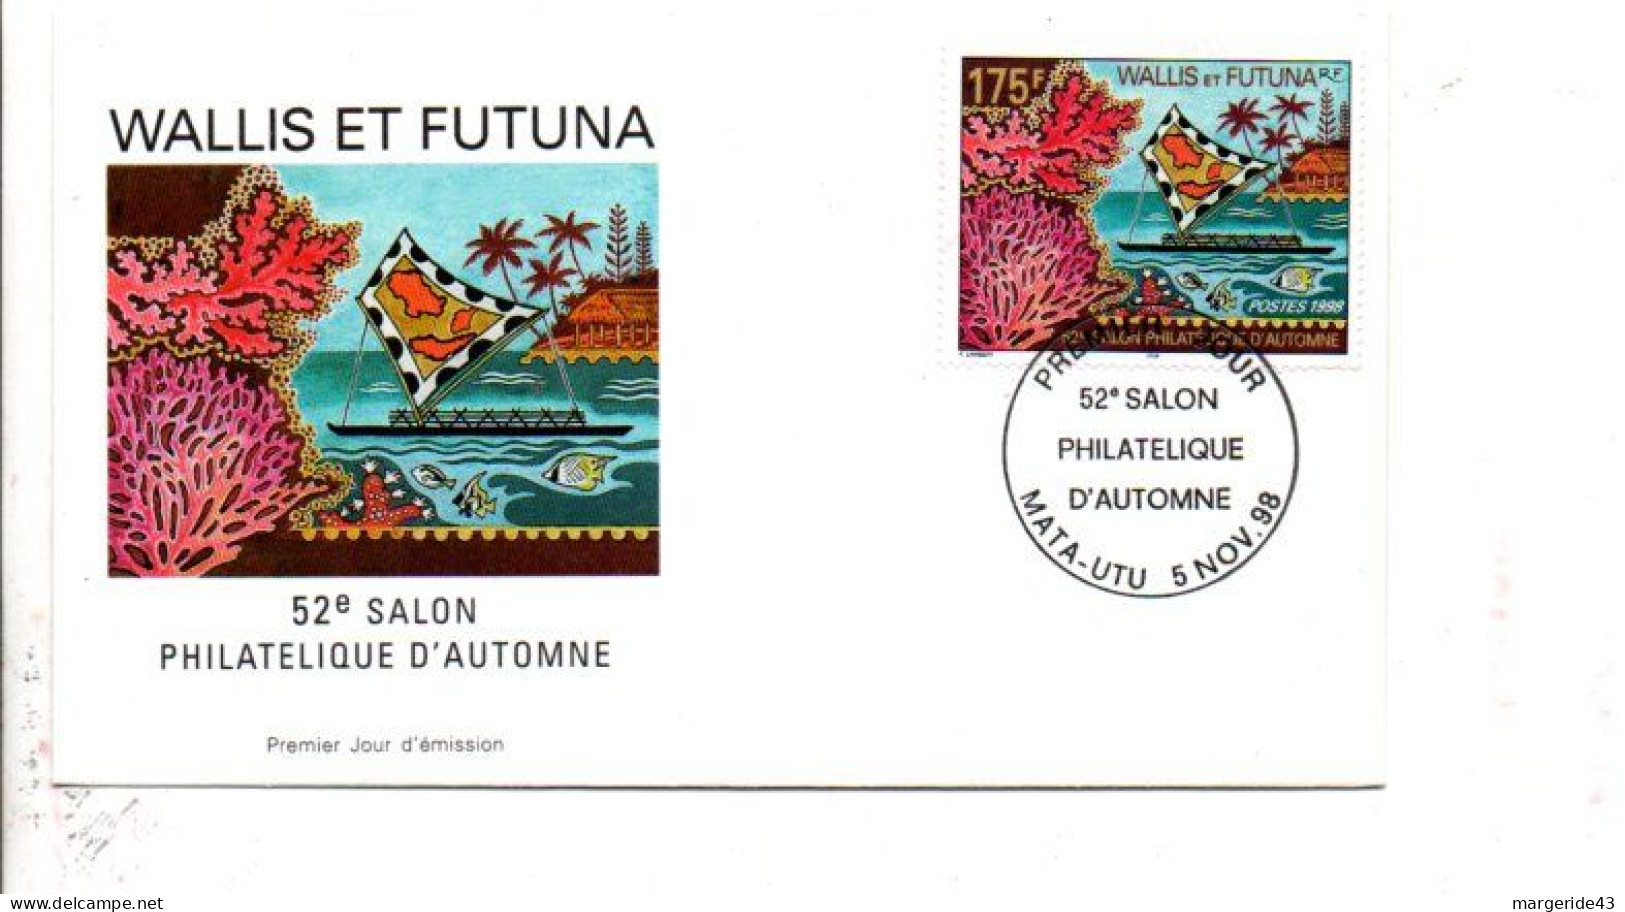 WALLIS ET FUTUNA FDC 1998 SALON PHILA D'AUTOMNE - FDC